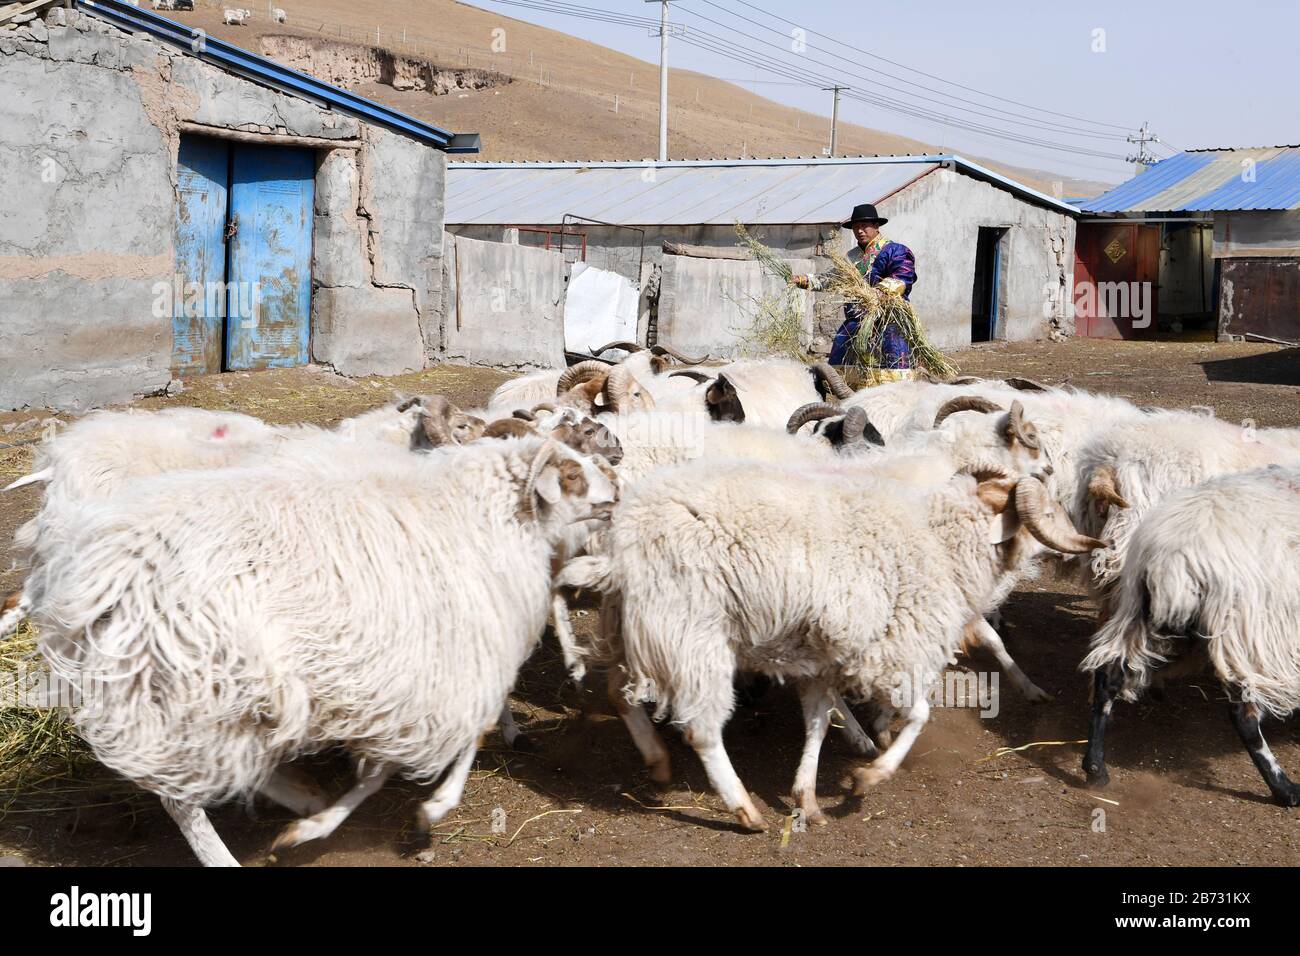 (200313) -- TIANZHU, 13 marzo 2020 (Xinhua) -- Song Tianzhu nutre un gregge di pecore nel villaggio di Nannigou della contea autonoma tibetana di Tianzhu, provincia di Gansu della Cina nordoccidentale, 12 marzo 2020. Sfruttando appieno le vaste praterie locali e il sostegno finanziario del governo alle regioni impoverite, il reddito familiare annuale della famiglia di Song Tianzhu ha raggiunto 200,000 yuan (circa 28,553 dollari USA) attraverso l'allevamento e il turismo. Inoltre, Song ha preso la guida nella fondazione di una cooperativa per aumentare i redditi di altri abitanti del villaggio. Con i grandi sforzi compiuti dal governo locale e. Foto Stock